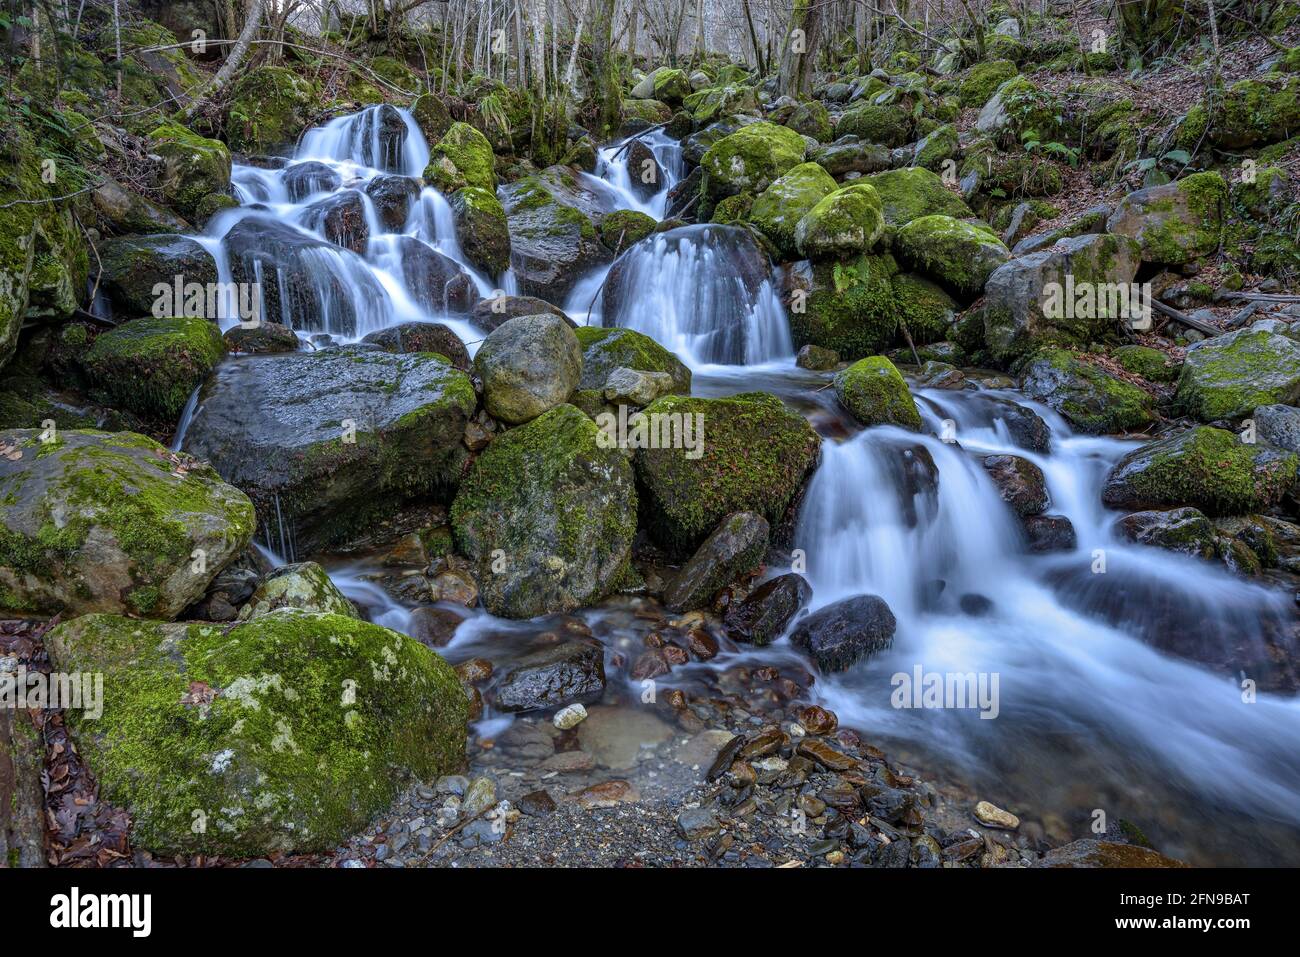 Waterfall in Toran river, in the Torán Valley (Aran Valley, Catalonia, Spain, Pyrenees) ESP: Salto de agua en el río Toran, en el Valle de Torán Stock Photo